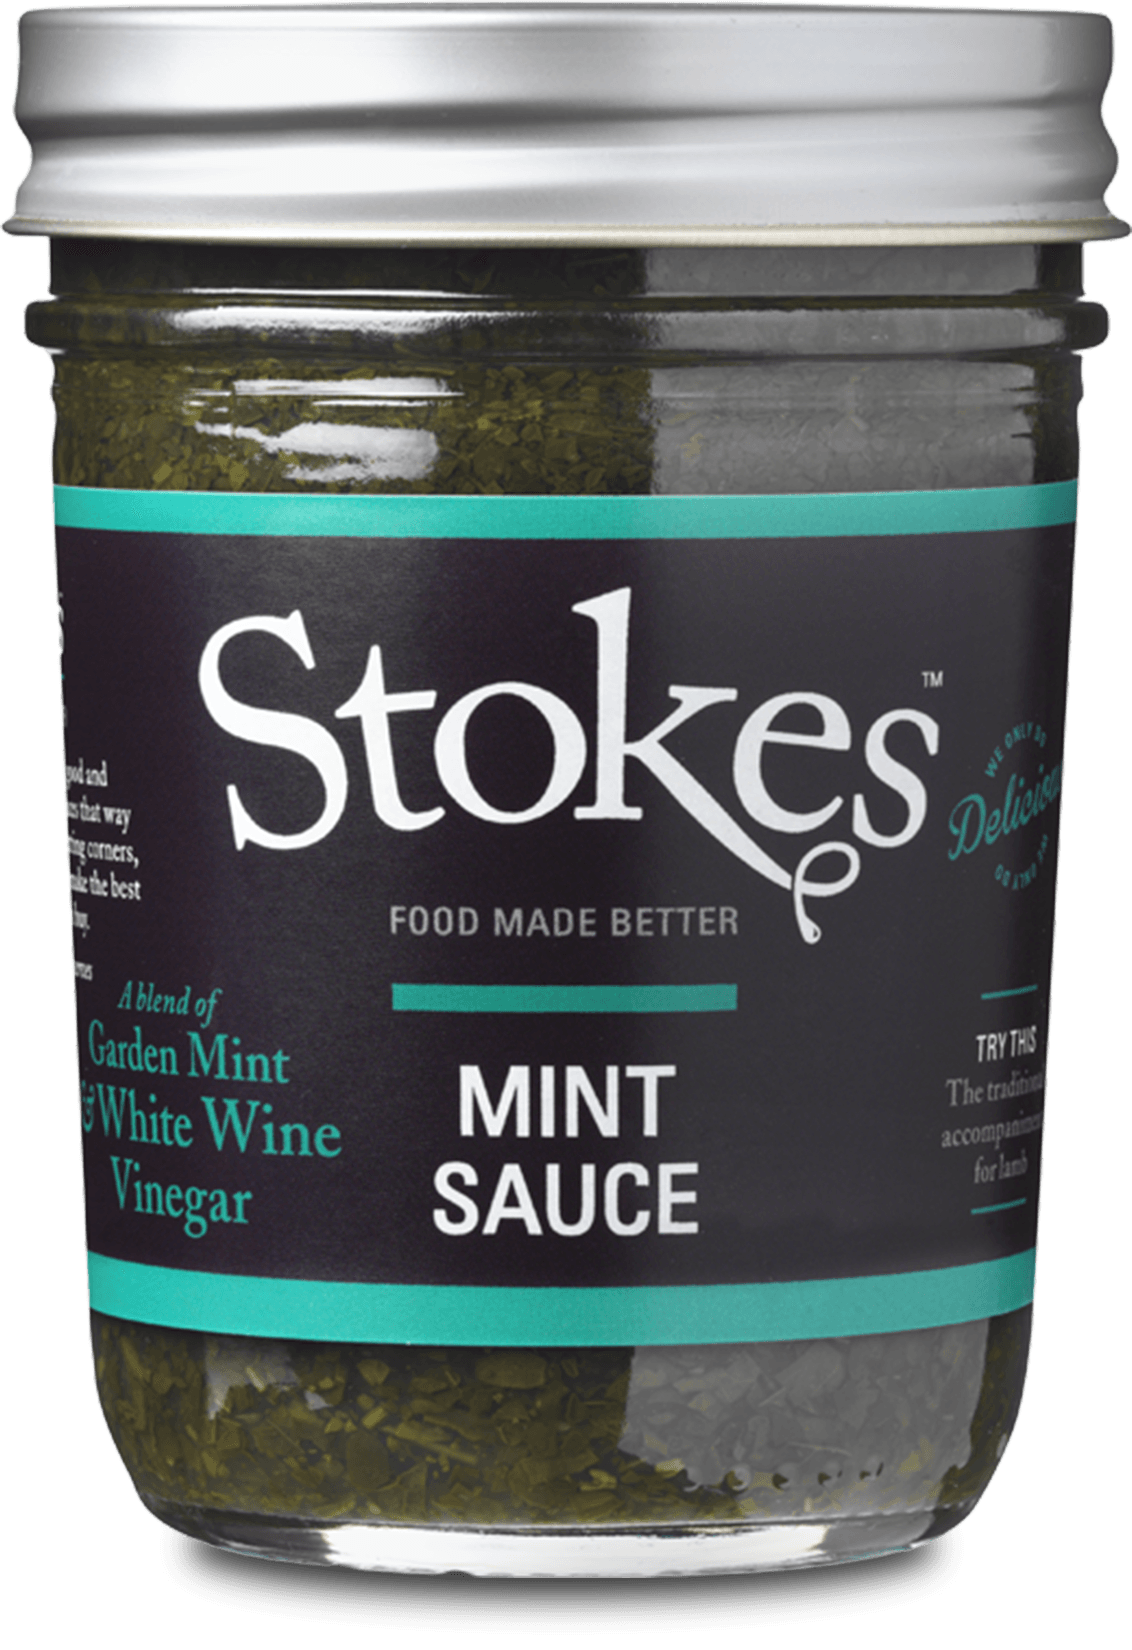 Mint Sauce - Stokes Sauces